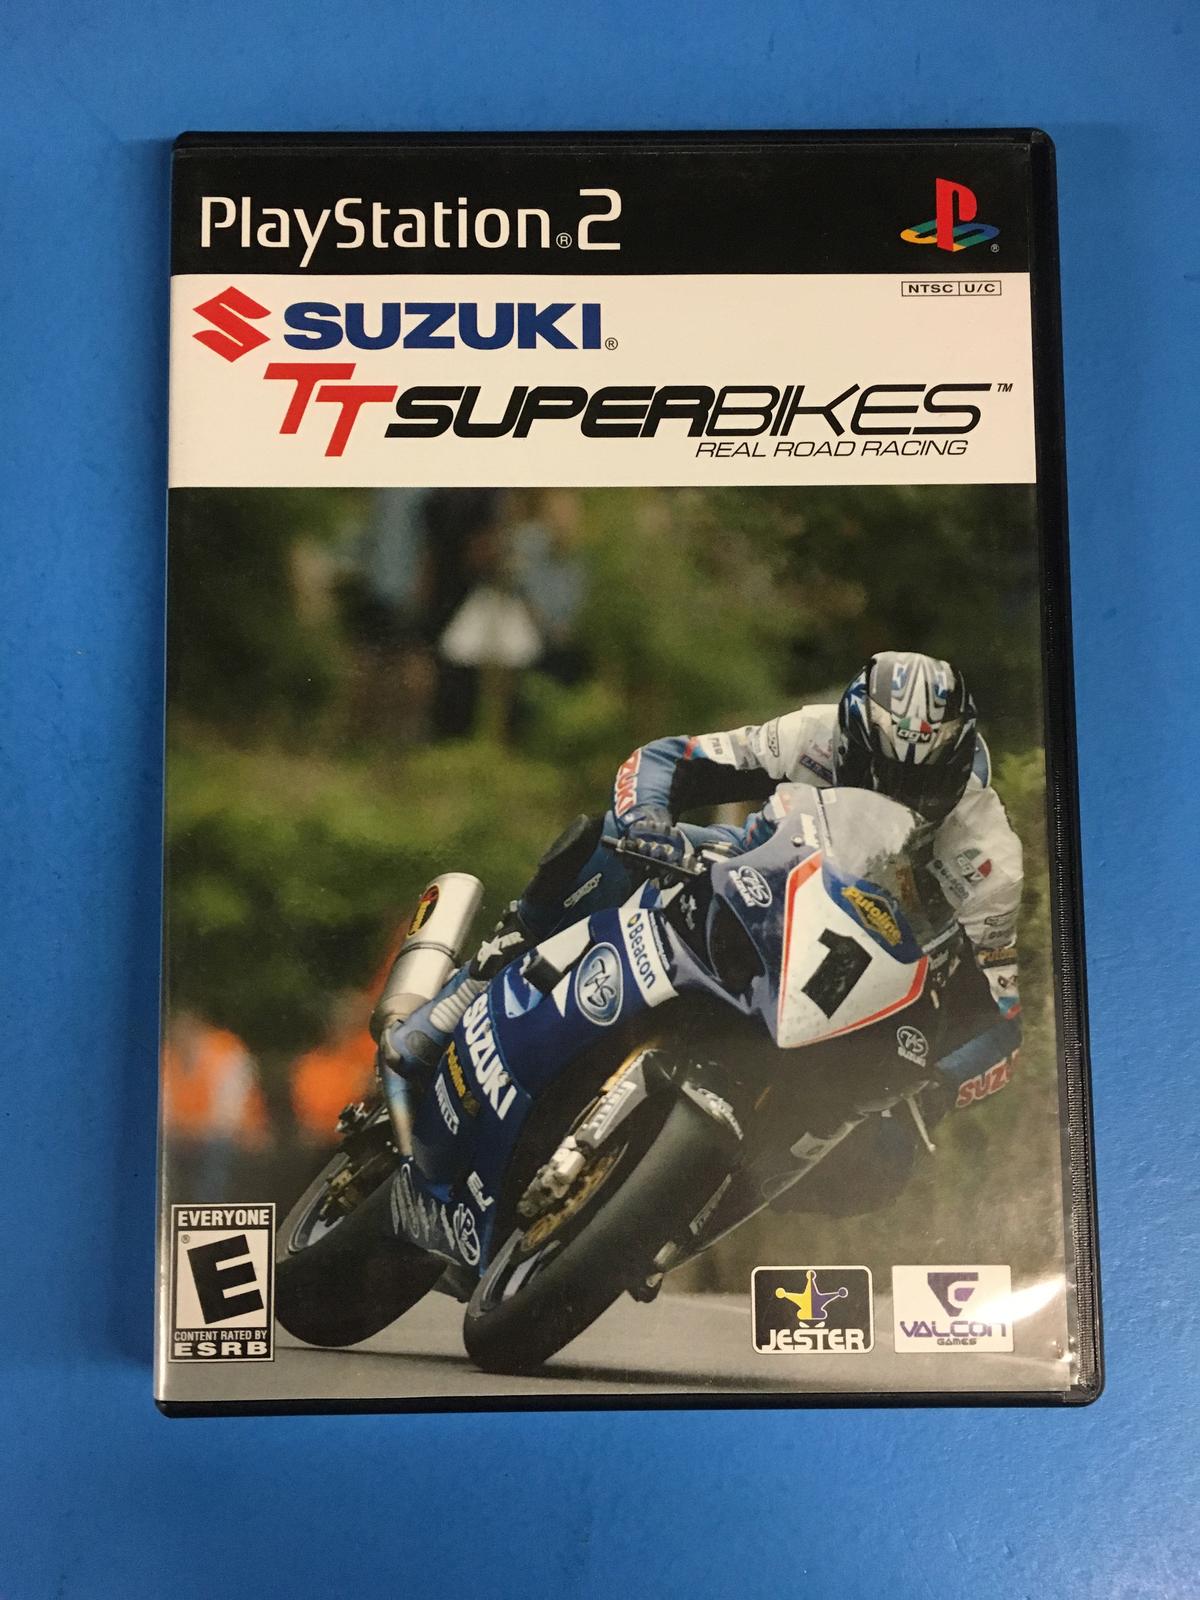 PS2 Playstation 2 Suzuki TT Super Bikes Video Game